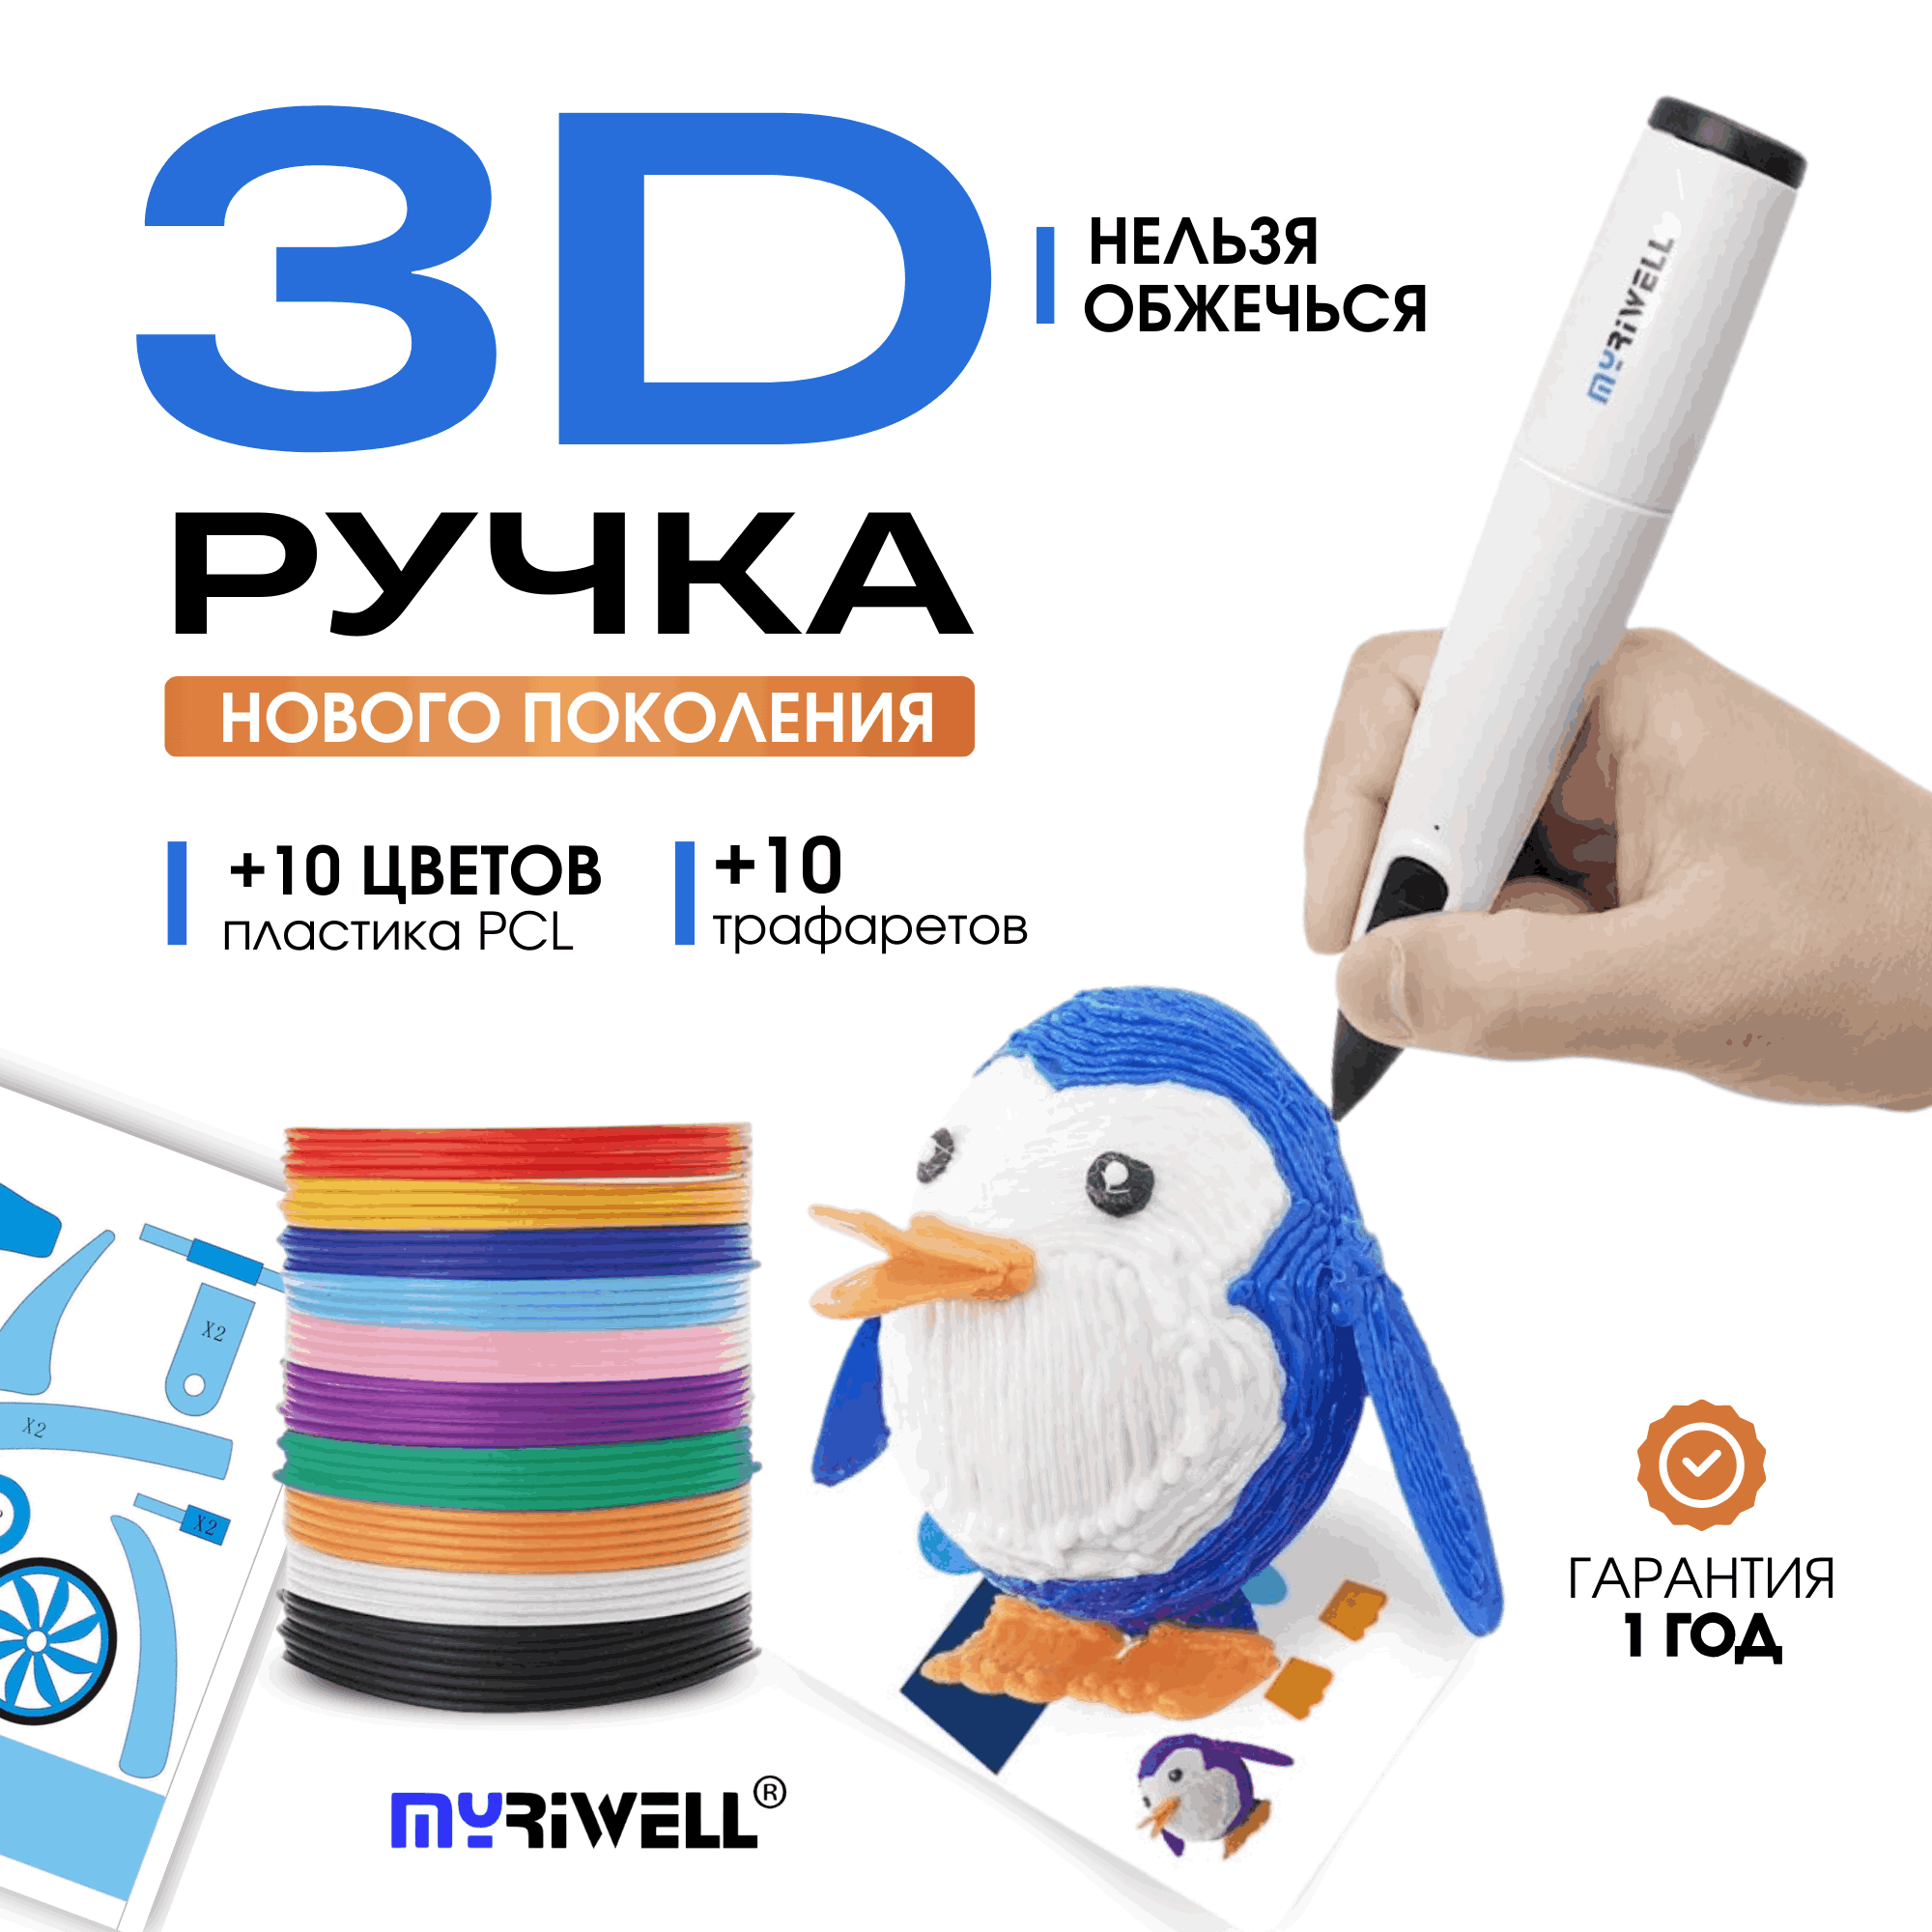 3D ручка Myriwell RP300B + 10 цветов пластика PCL и 10 трафаретов Голубой стилус ручка для магнитного планшета